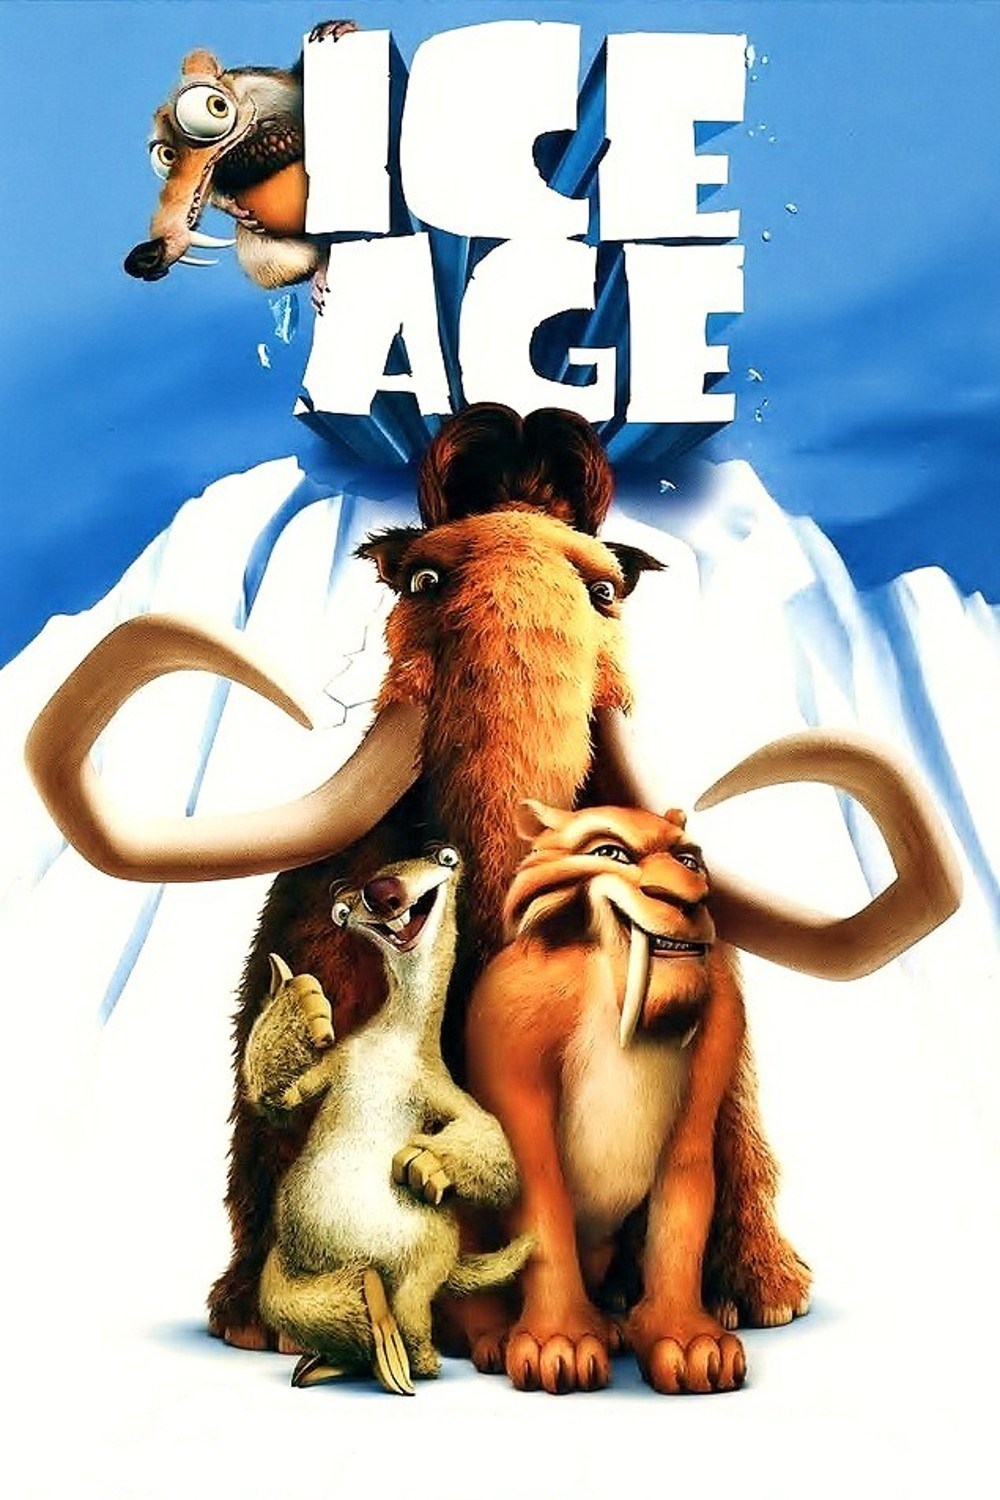 Ice_Age